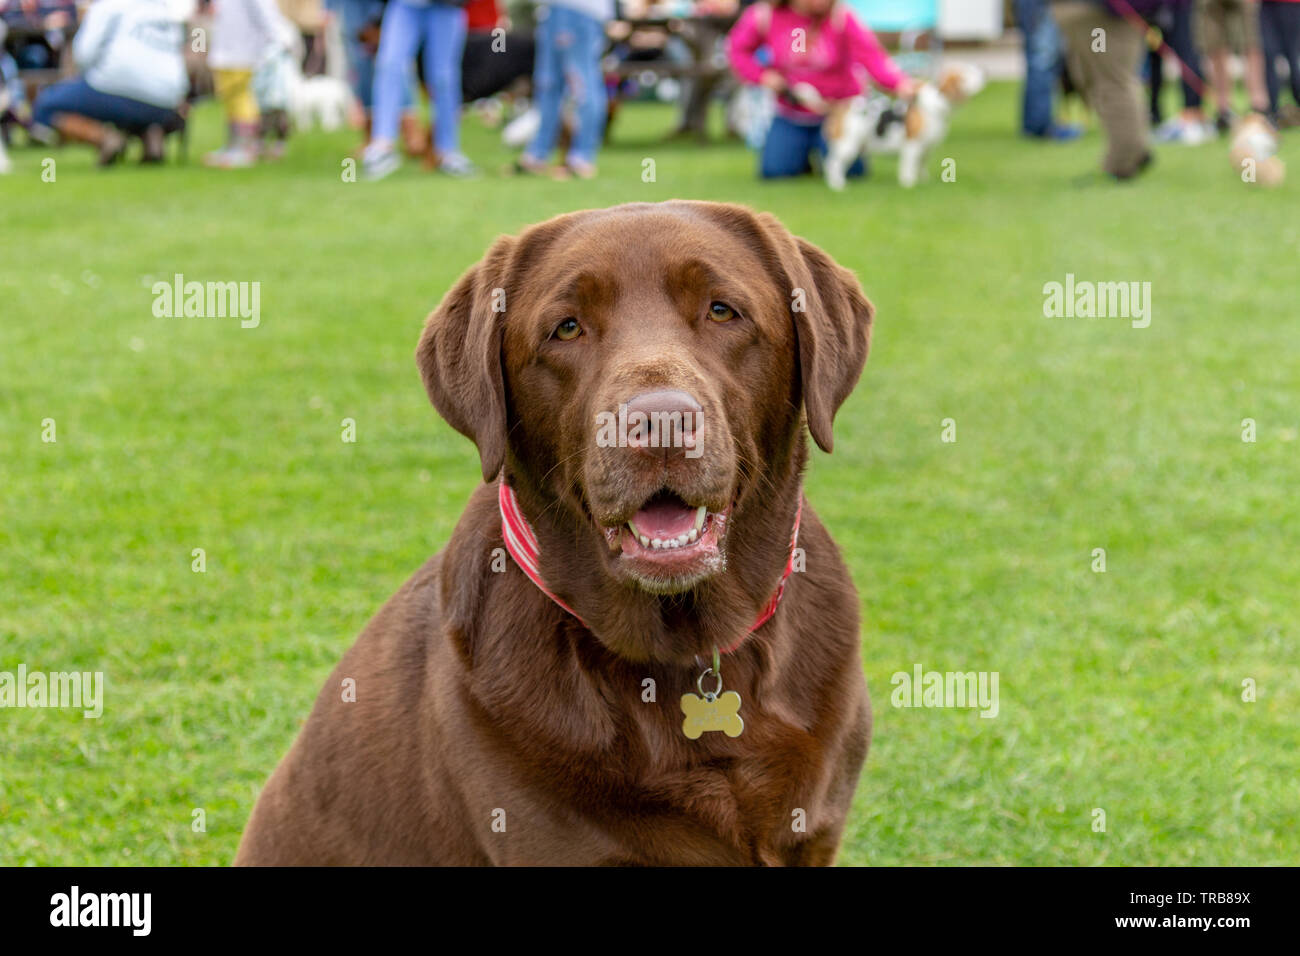 Marrone cioccolato labrador cane con felice espressione, seduto sull'erba. Stockport, Cheshire, Regno Unito. Foto Stock